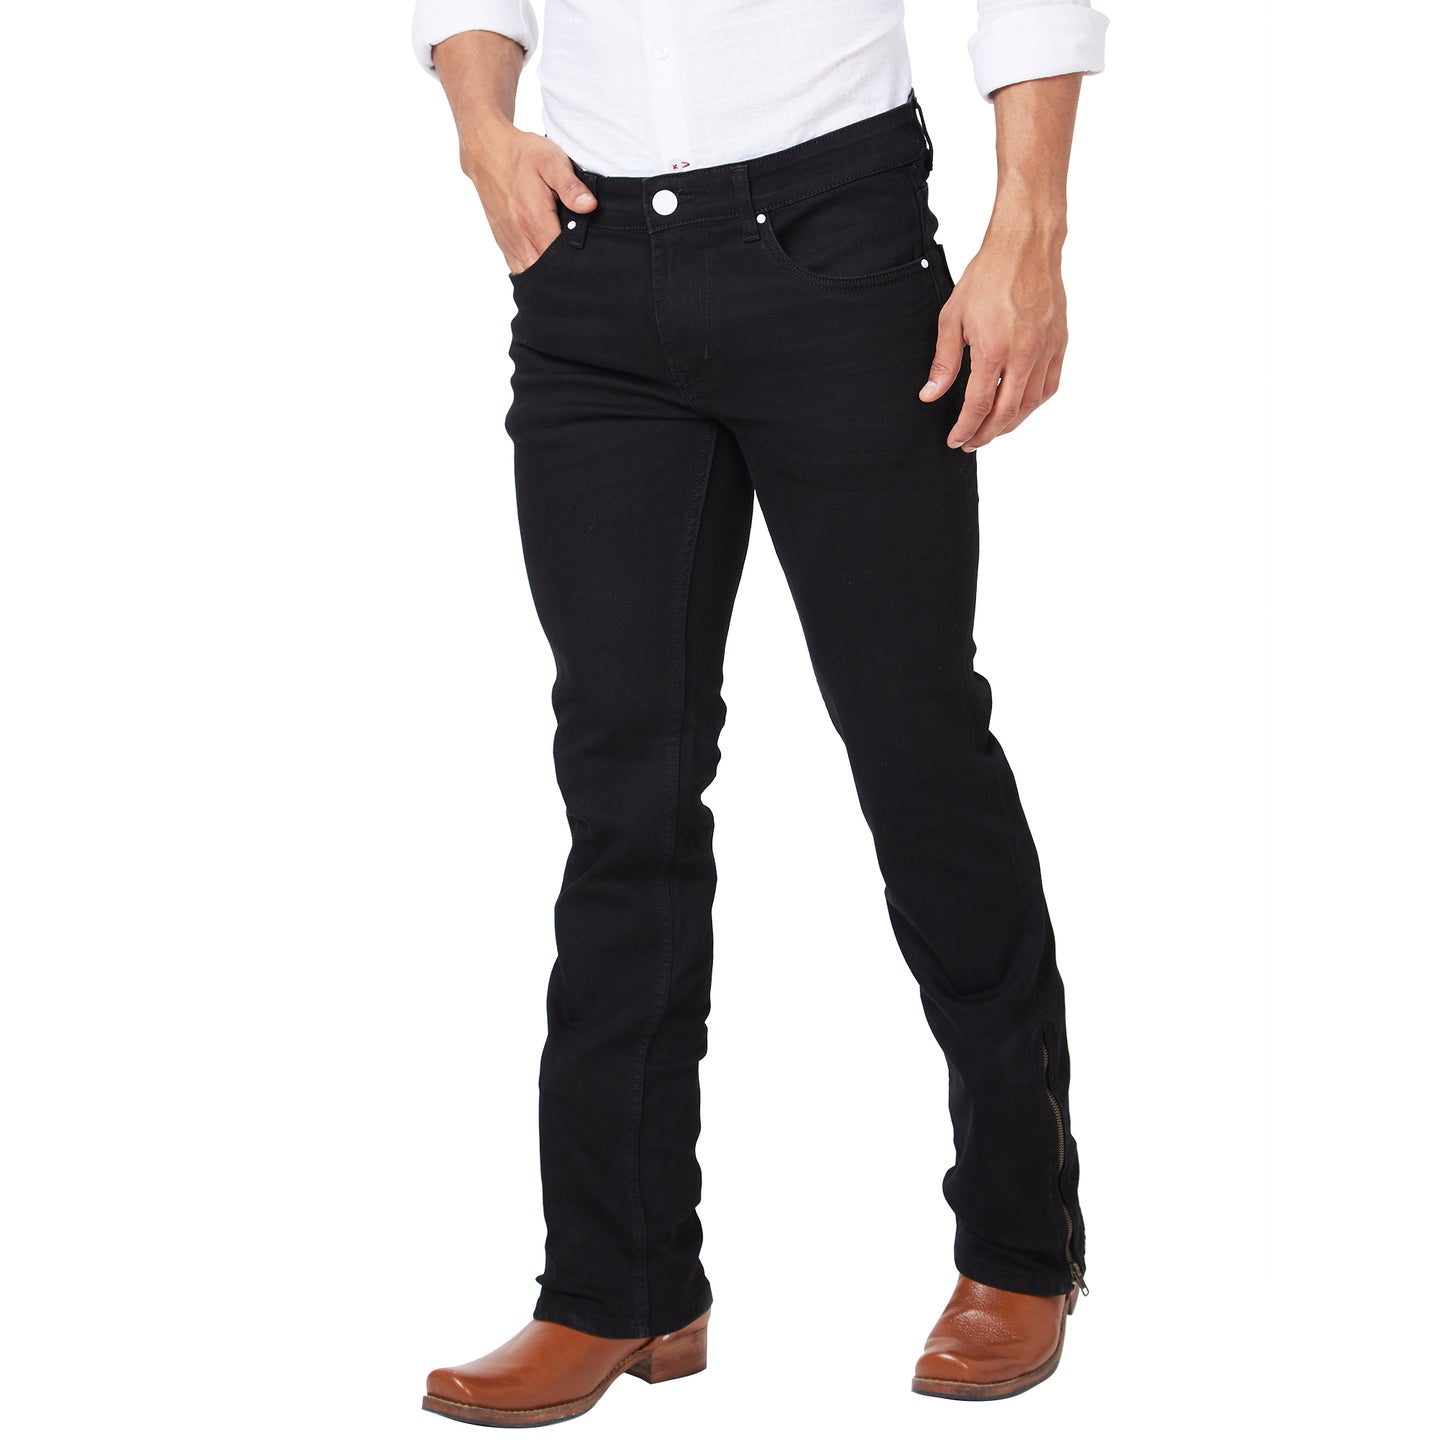 Men's Casual Denim Slim Fit Bootcut Jeans